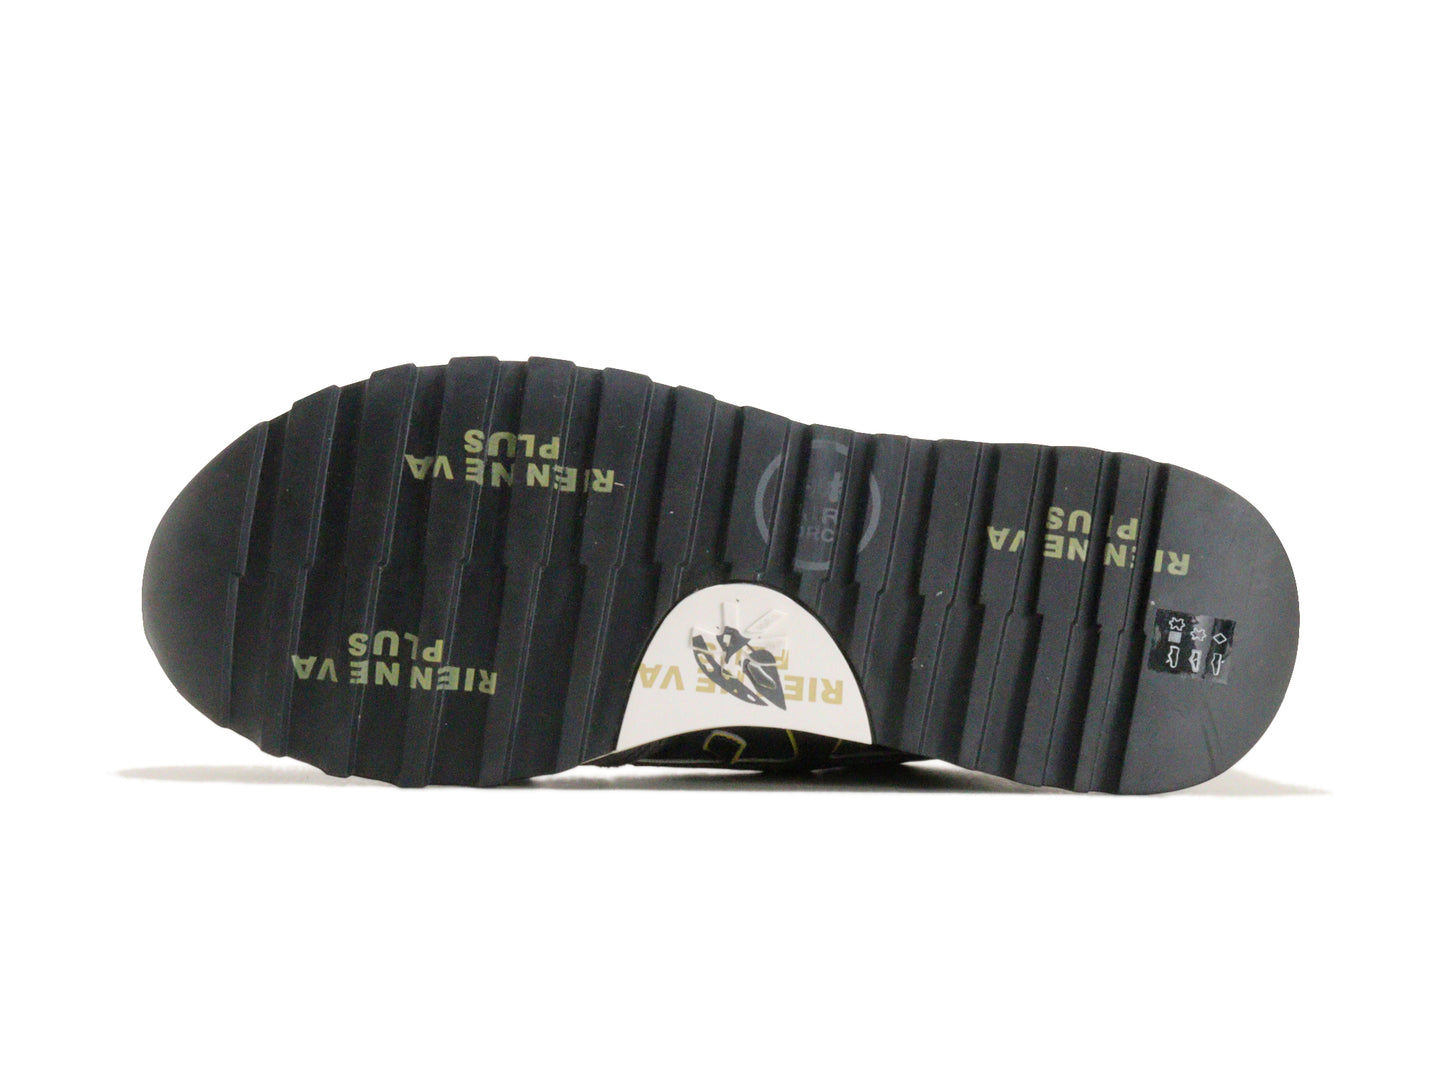 PREMIATAのスニーカー「4059」の靴底の商品画像